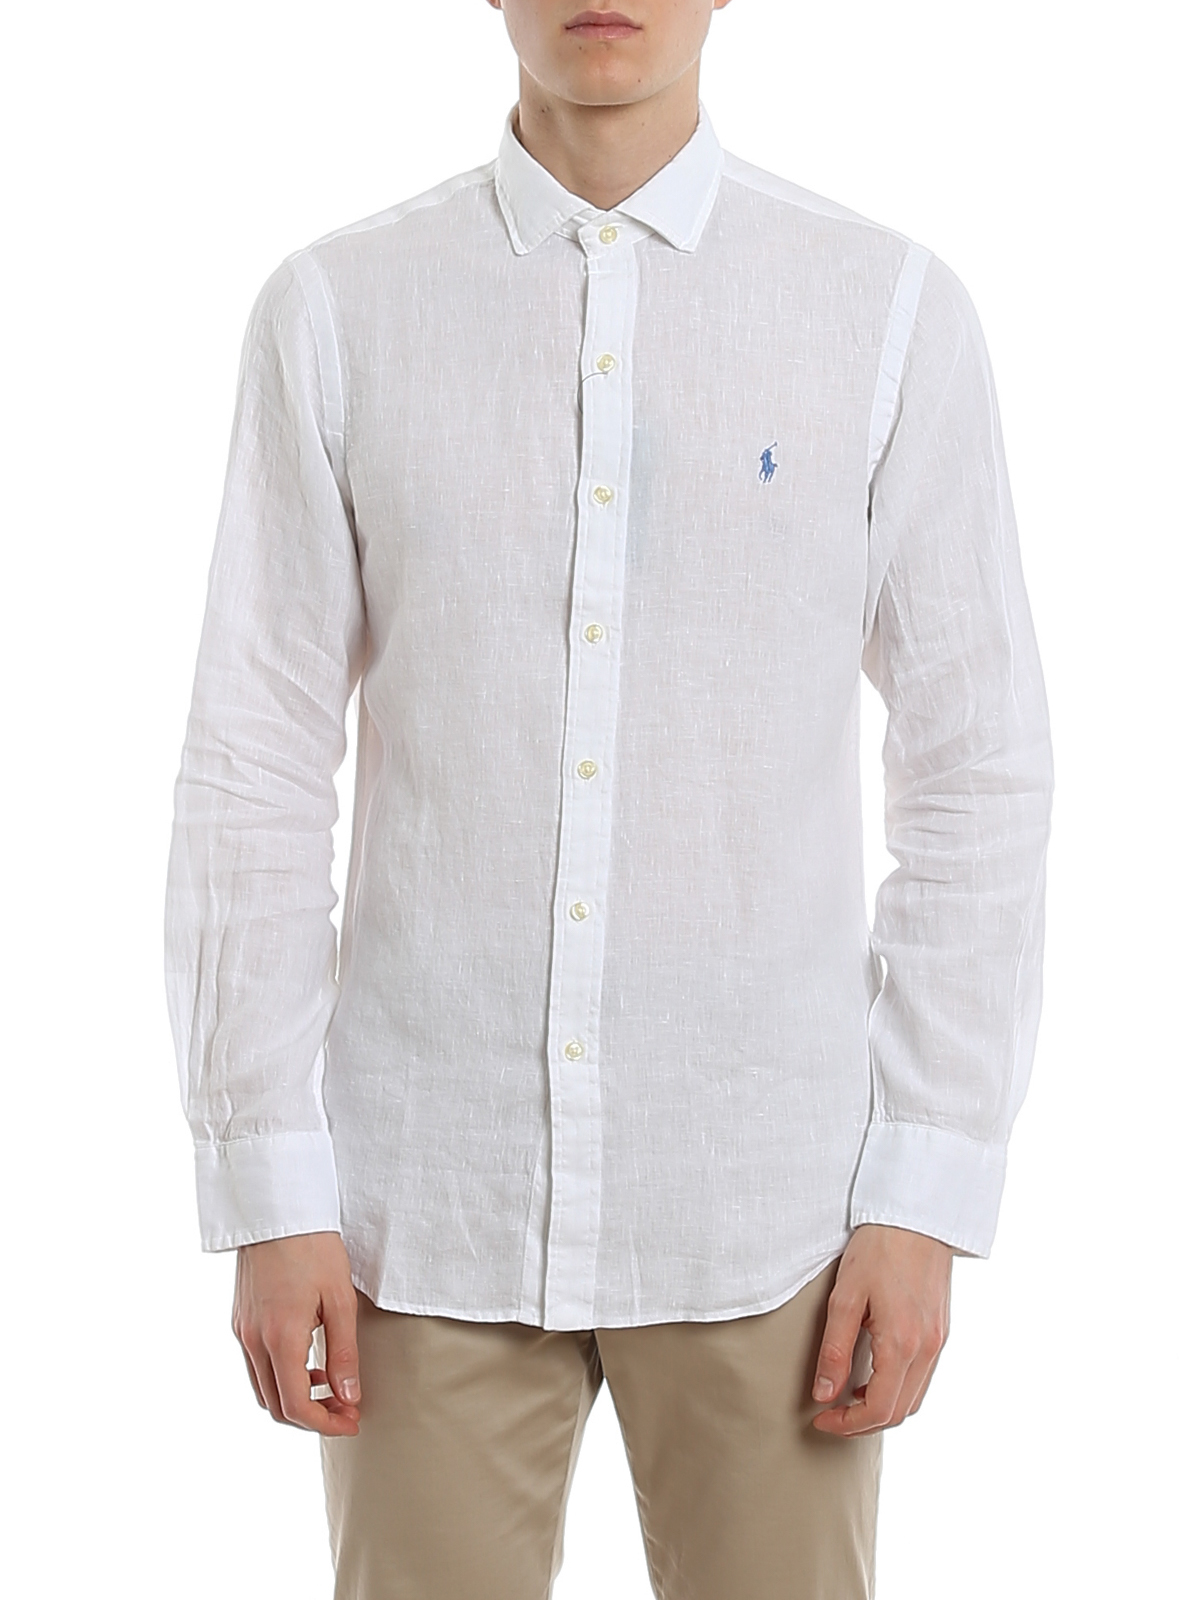 Shirts Polo Ralph Lauren - White linen shirt - 710795426006 